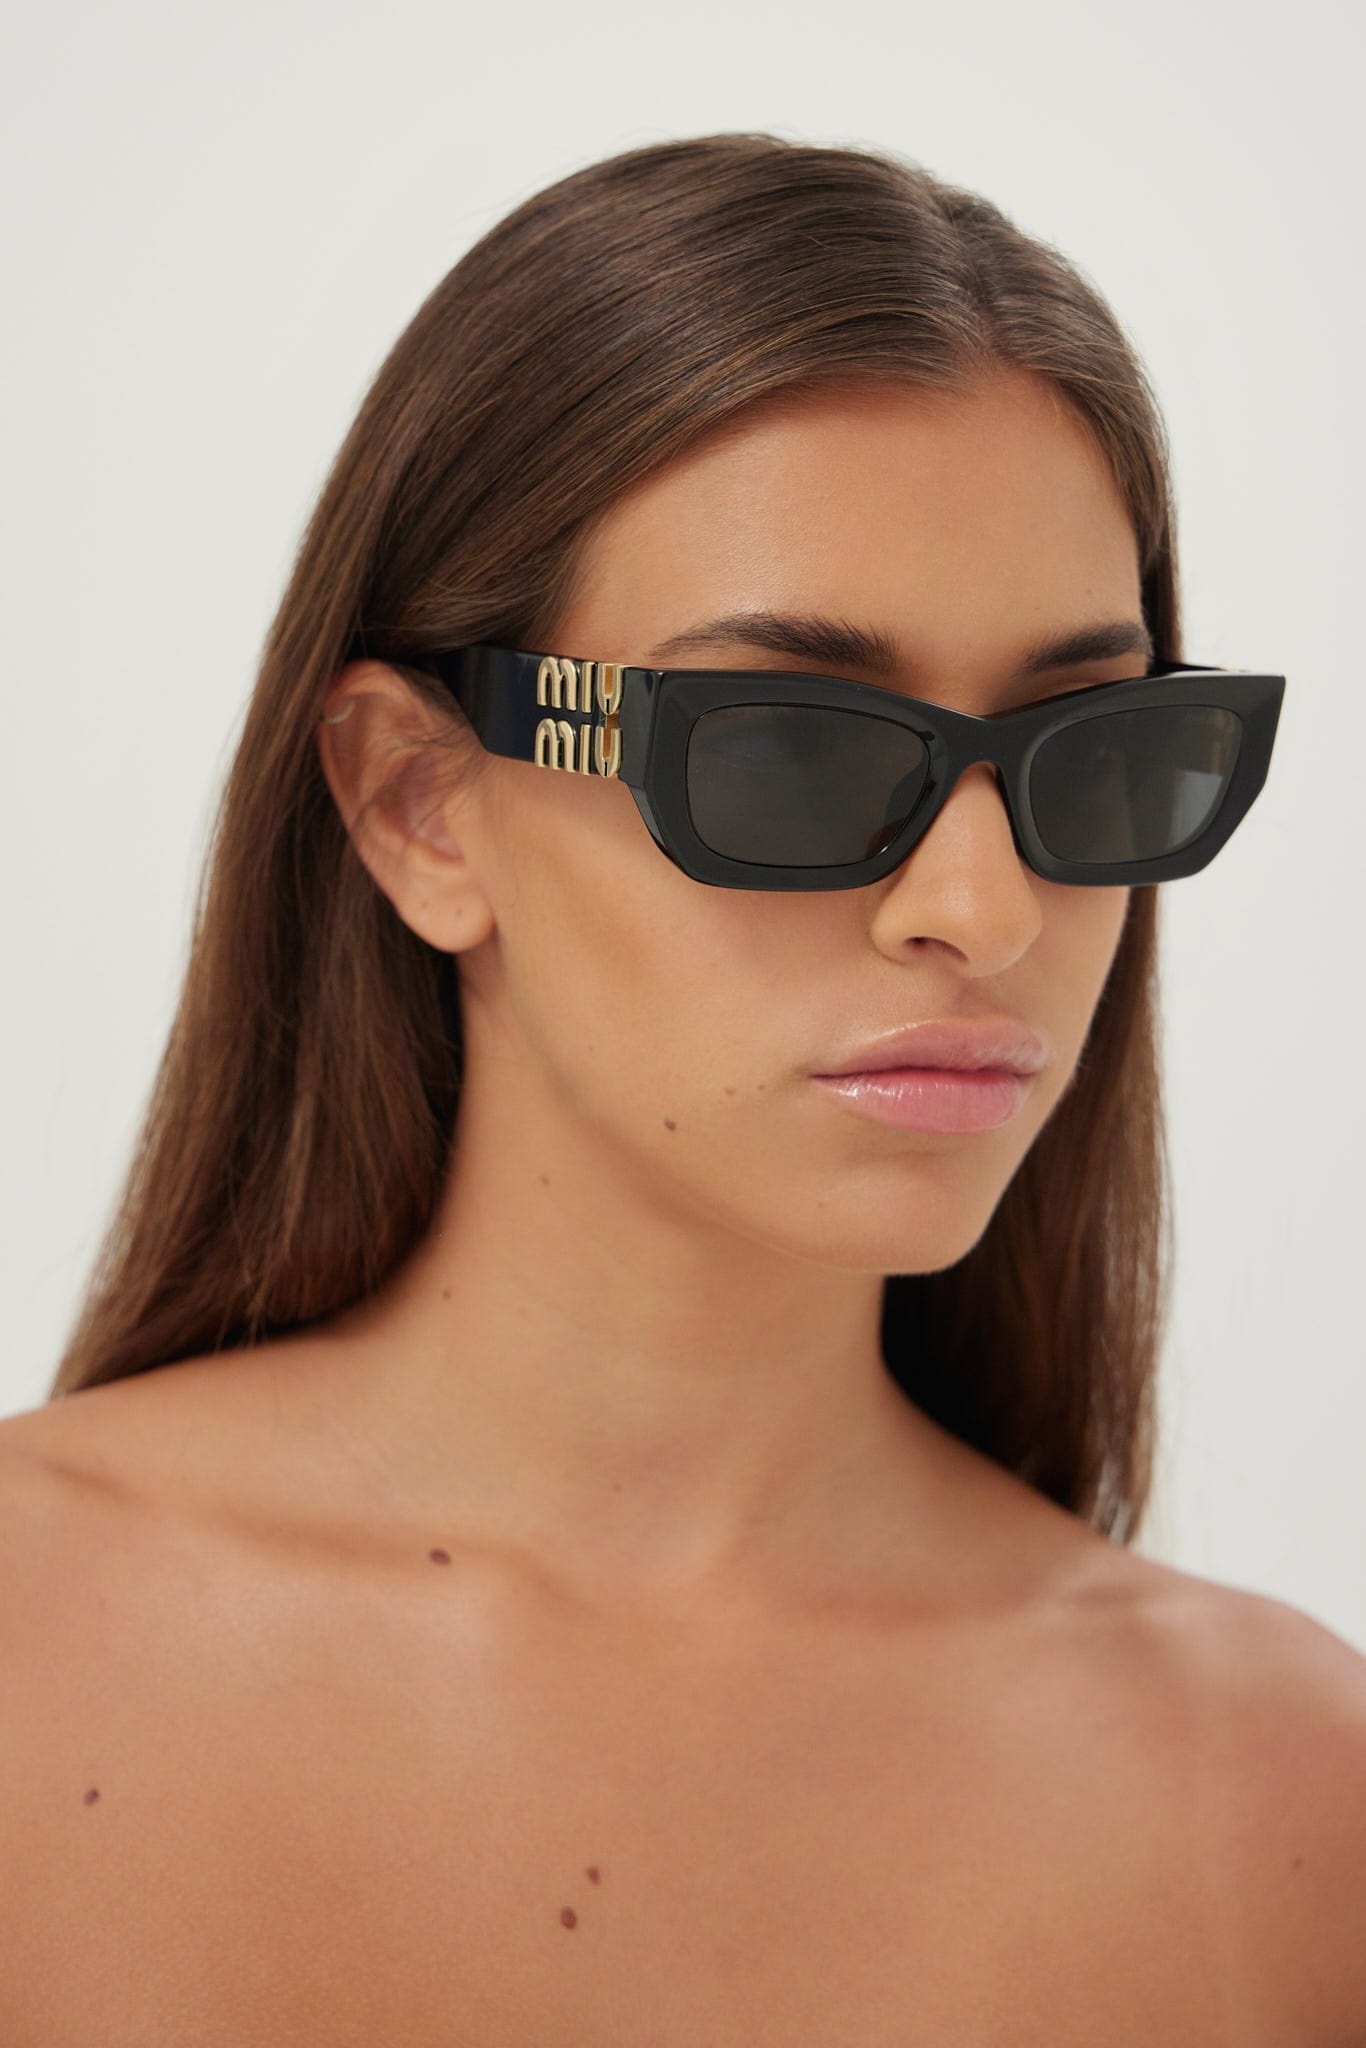 Miu Miu small cat-eye black sunglasses - Eyewear Club